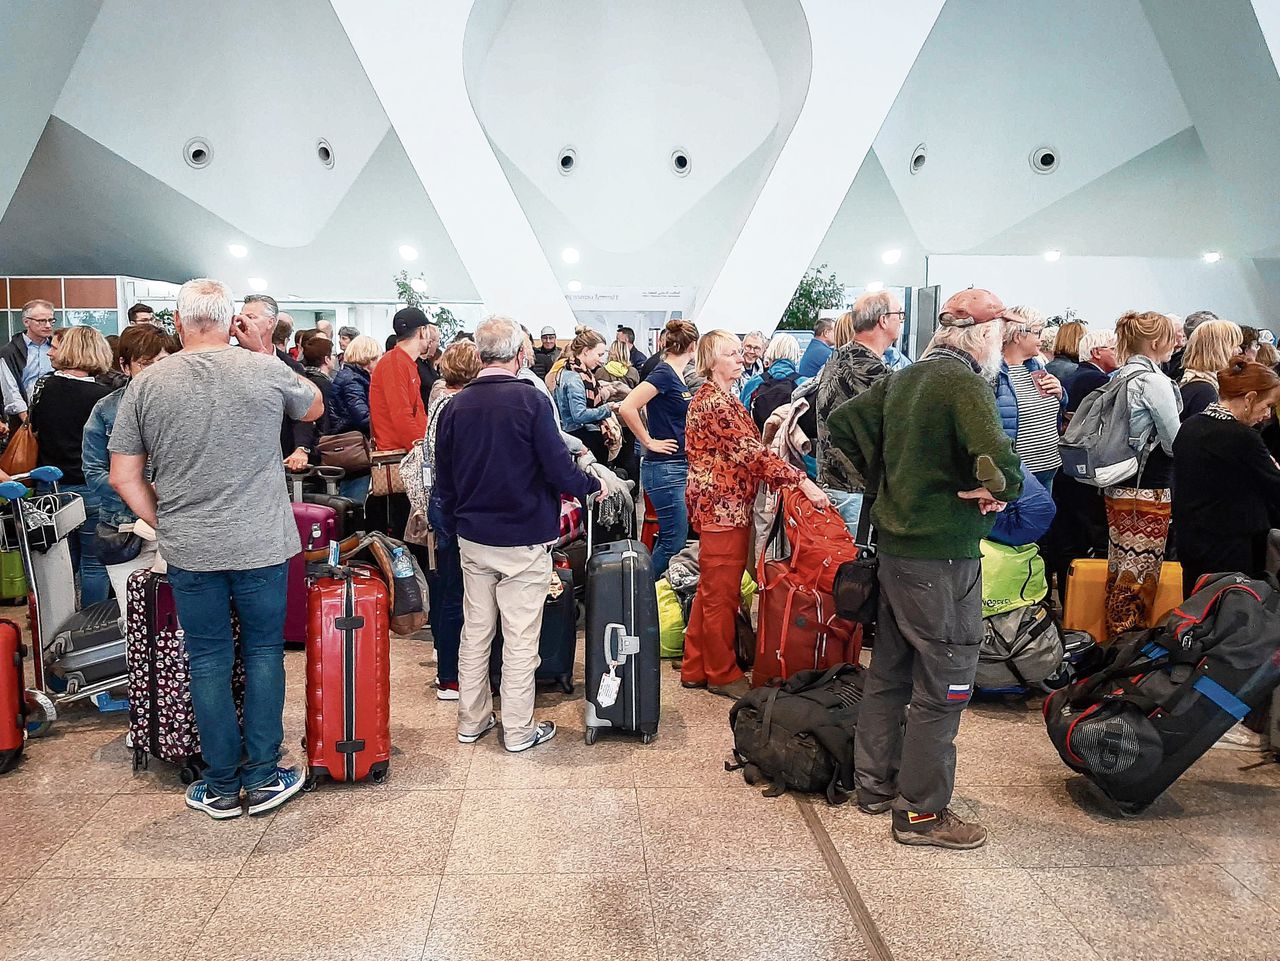 Vanuit Marrakesh vertrekken speciale vluchten om gestrande Europese toeristen thuis te krijgen.